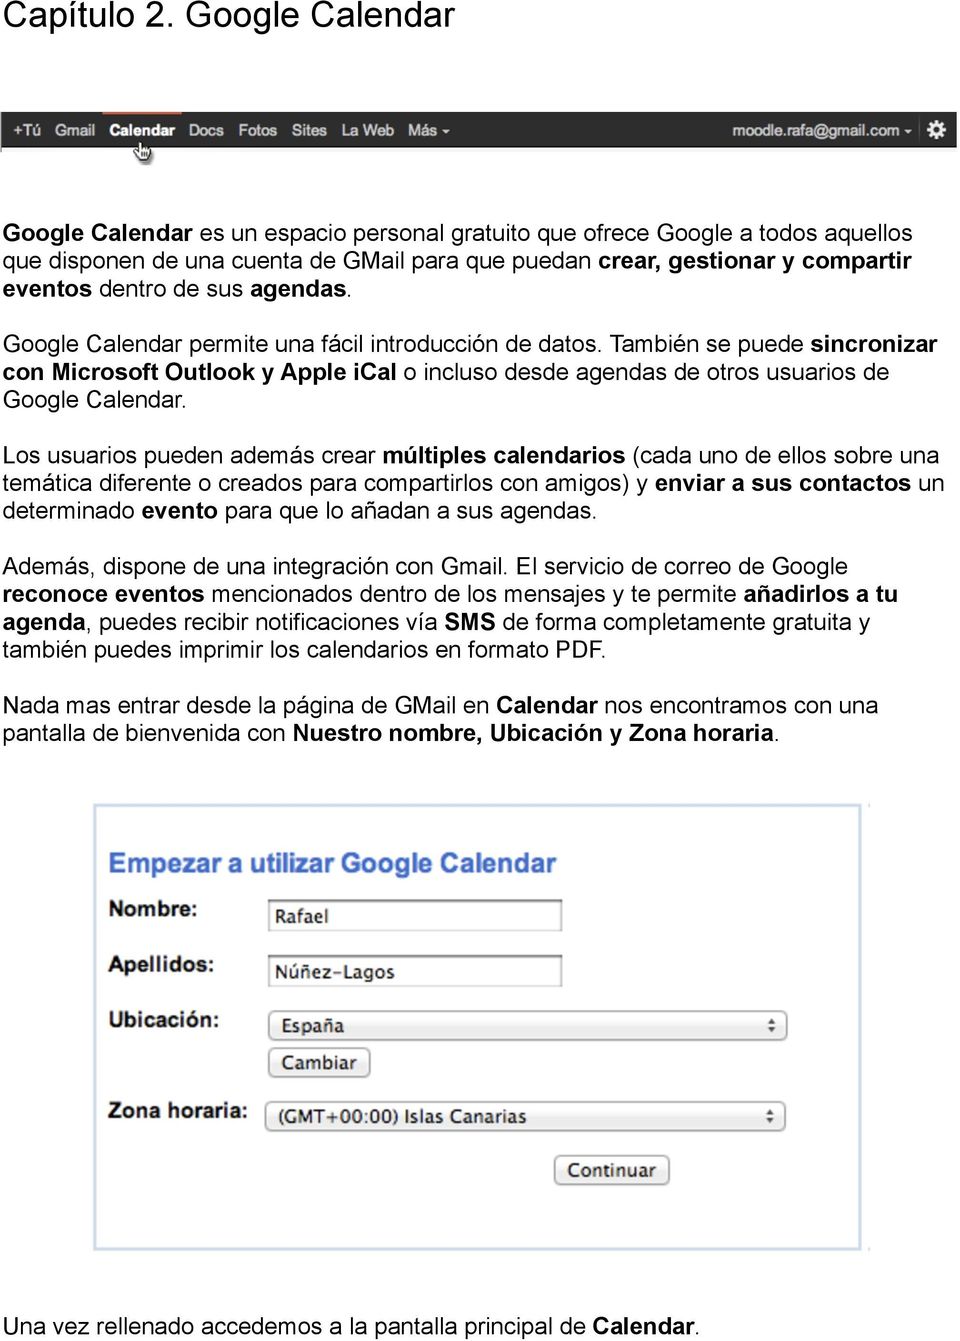 sus agendas. Google Calendar permite una fácil introducción de datos. También se puede sincronizar con Microsoft Outlook y Apple ical o incluso desde agendas de otros usuarios de Google Calendar.